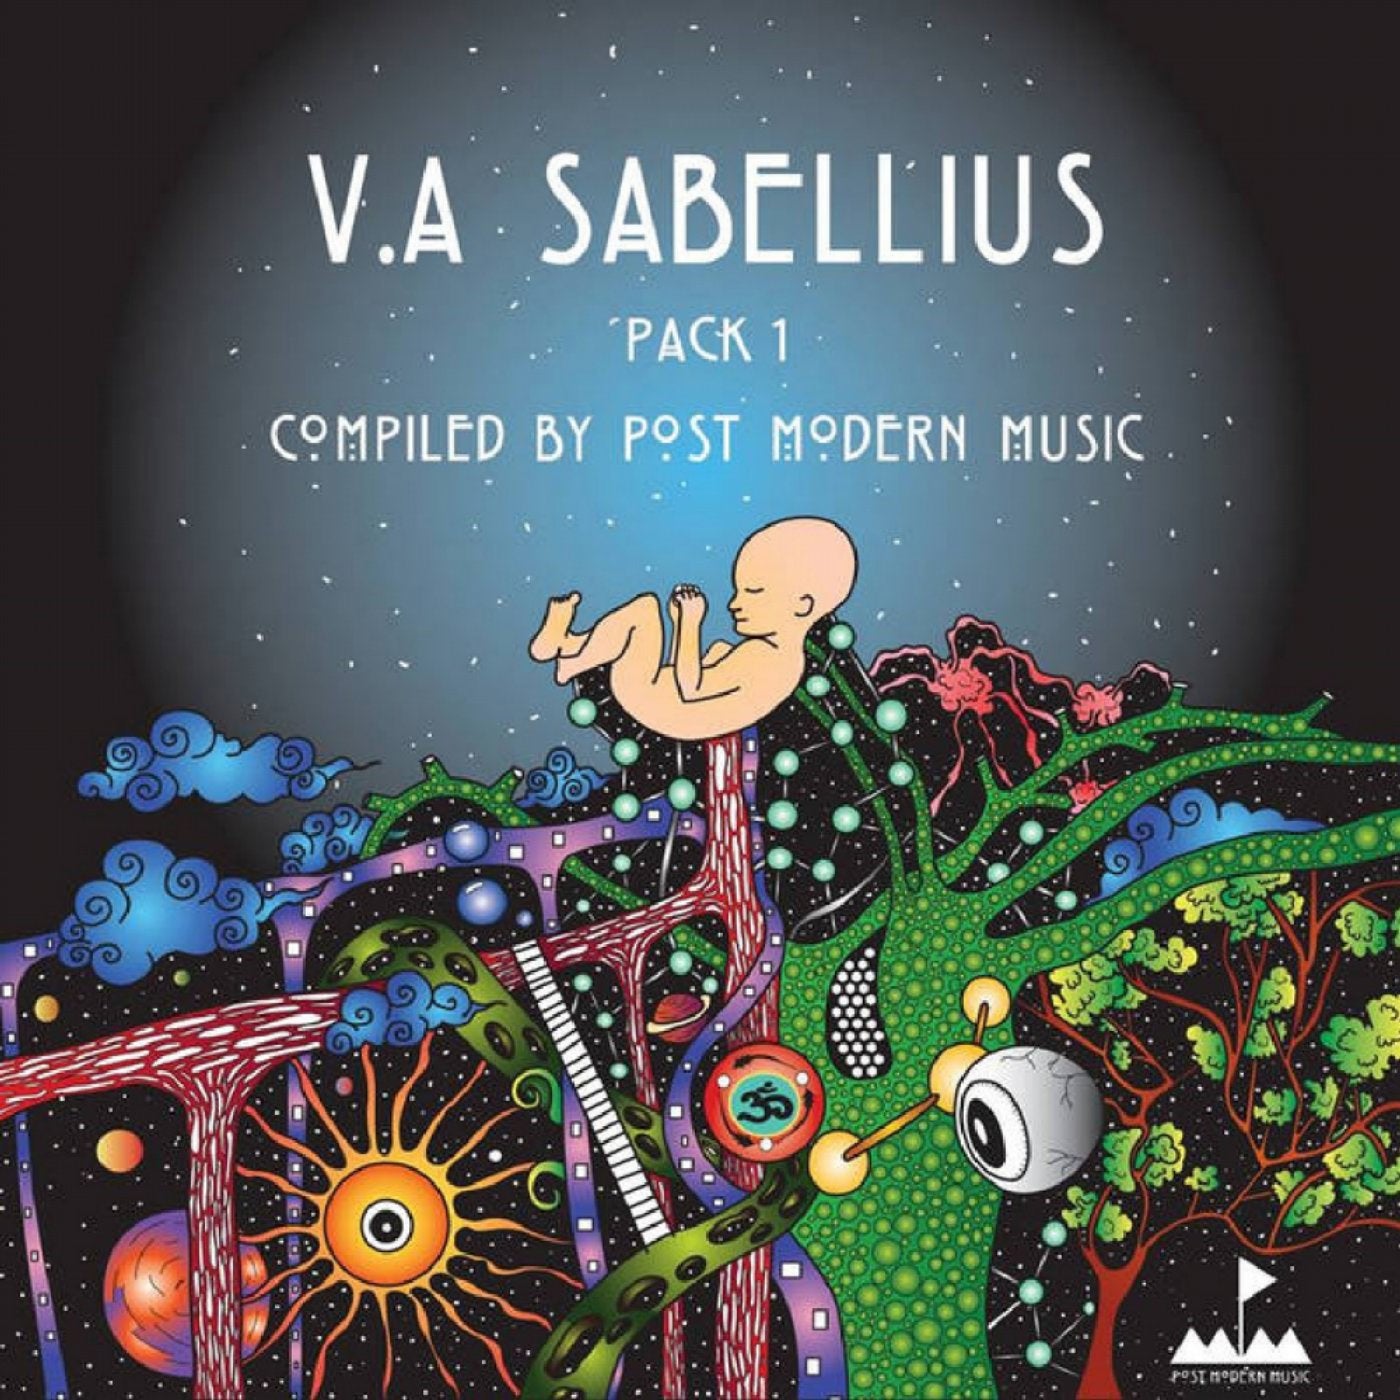 Sabellius - Pack 1